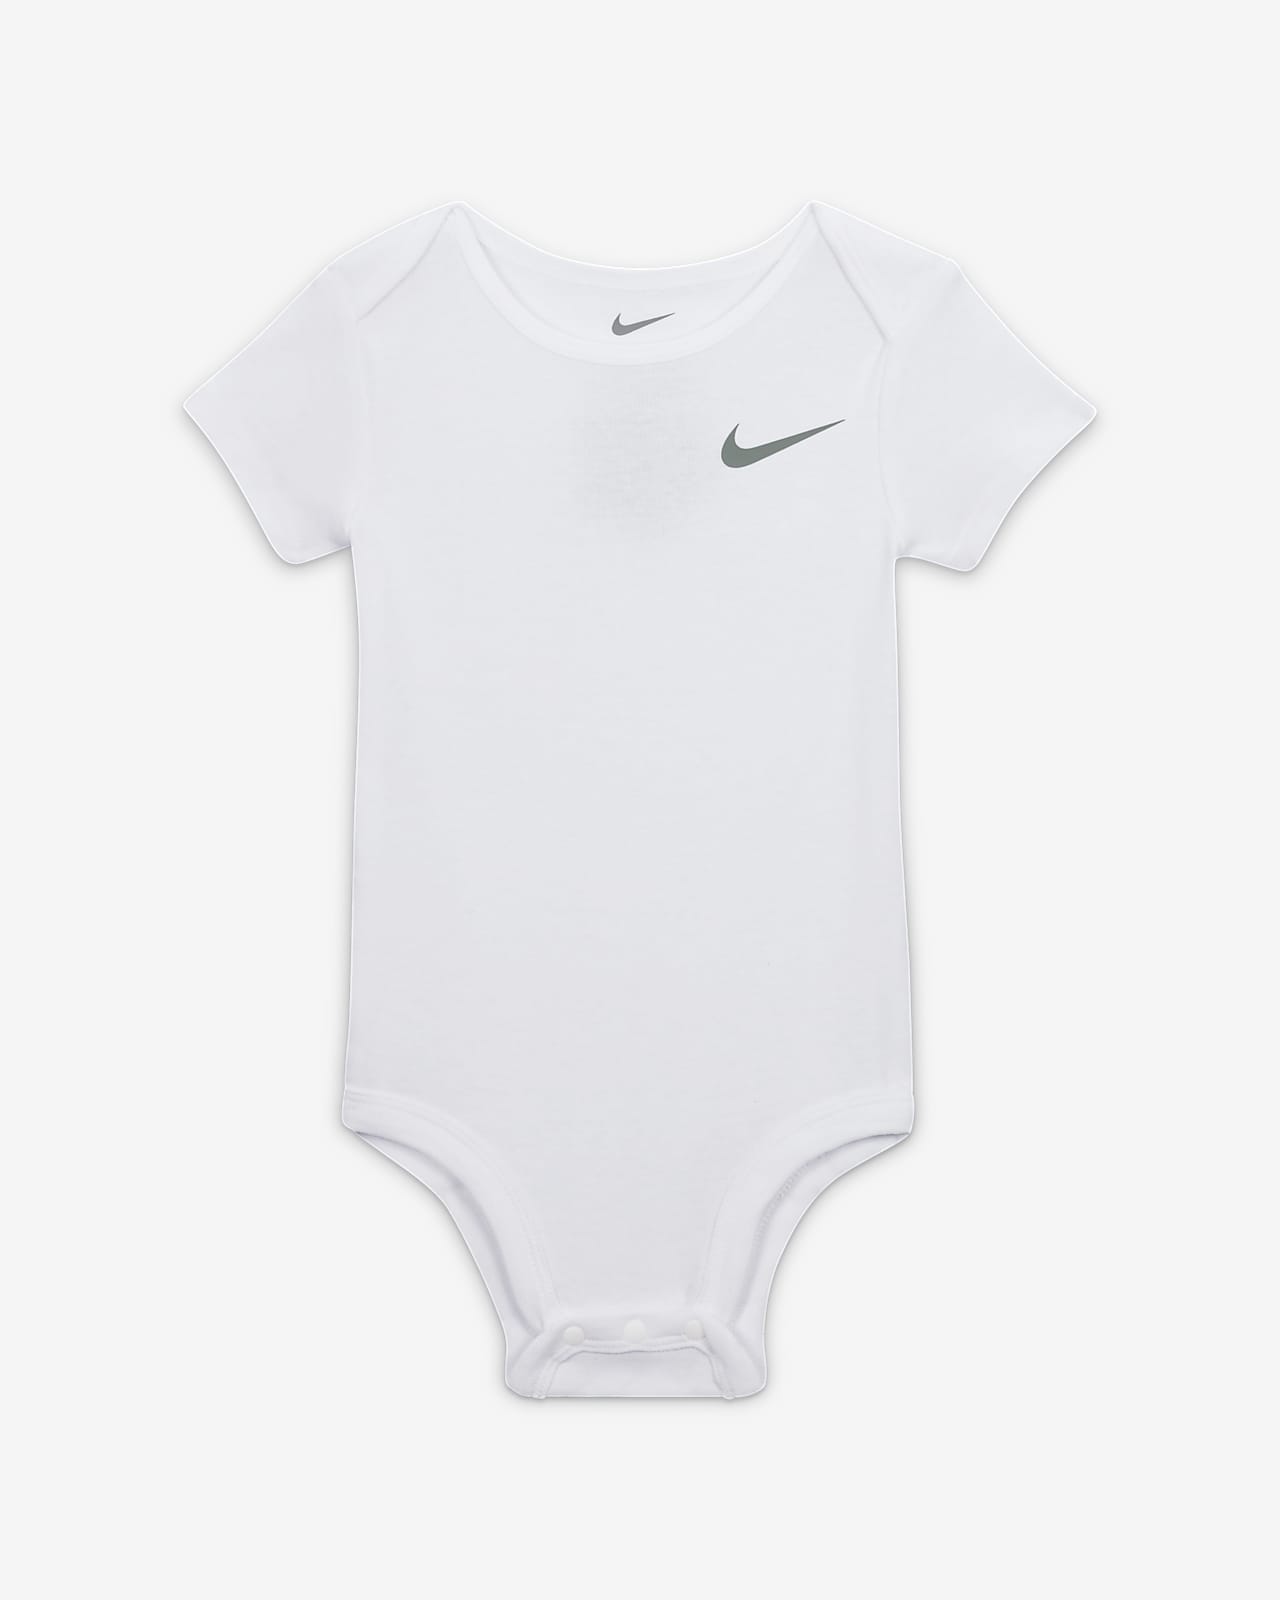 Baby Nike Pants Essentials Set 3-Piece Set. 3-Piece